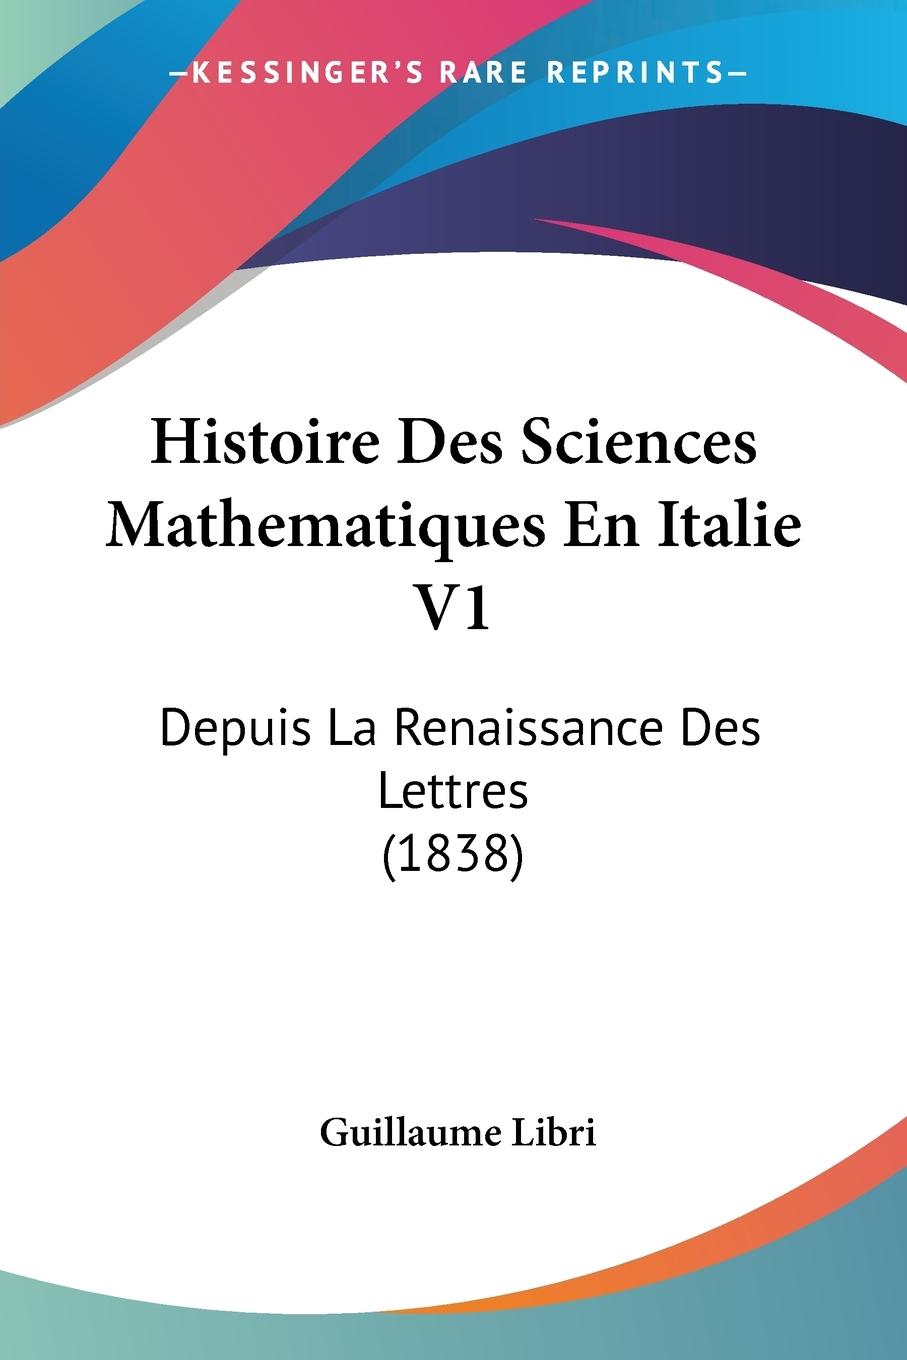 Histoire Des Sciences Mathematiques En Italie V1 - Libri, Guillaume